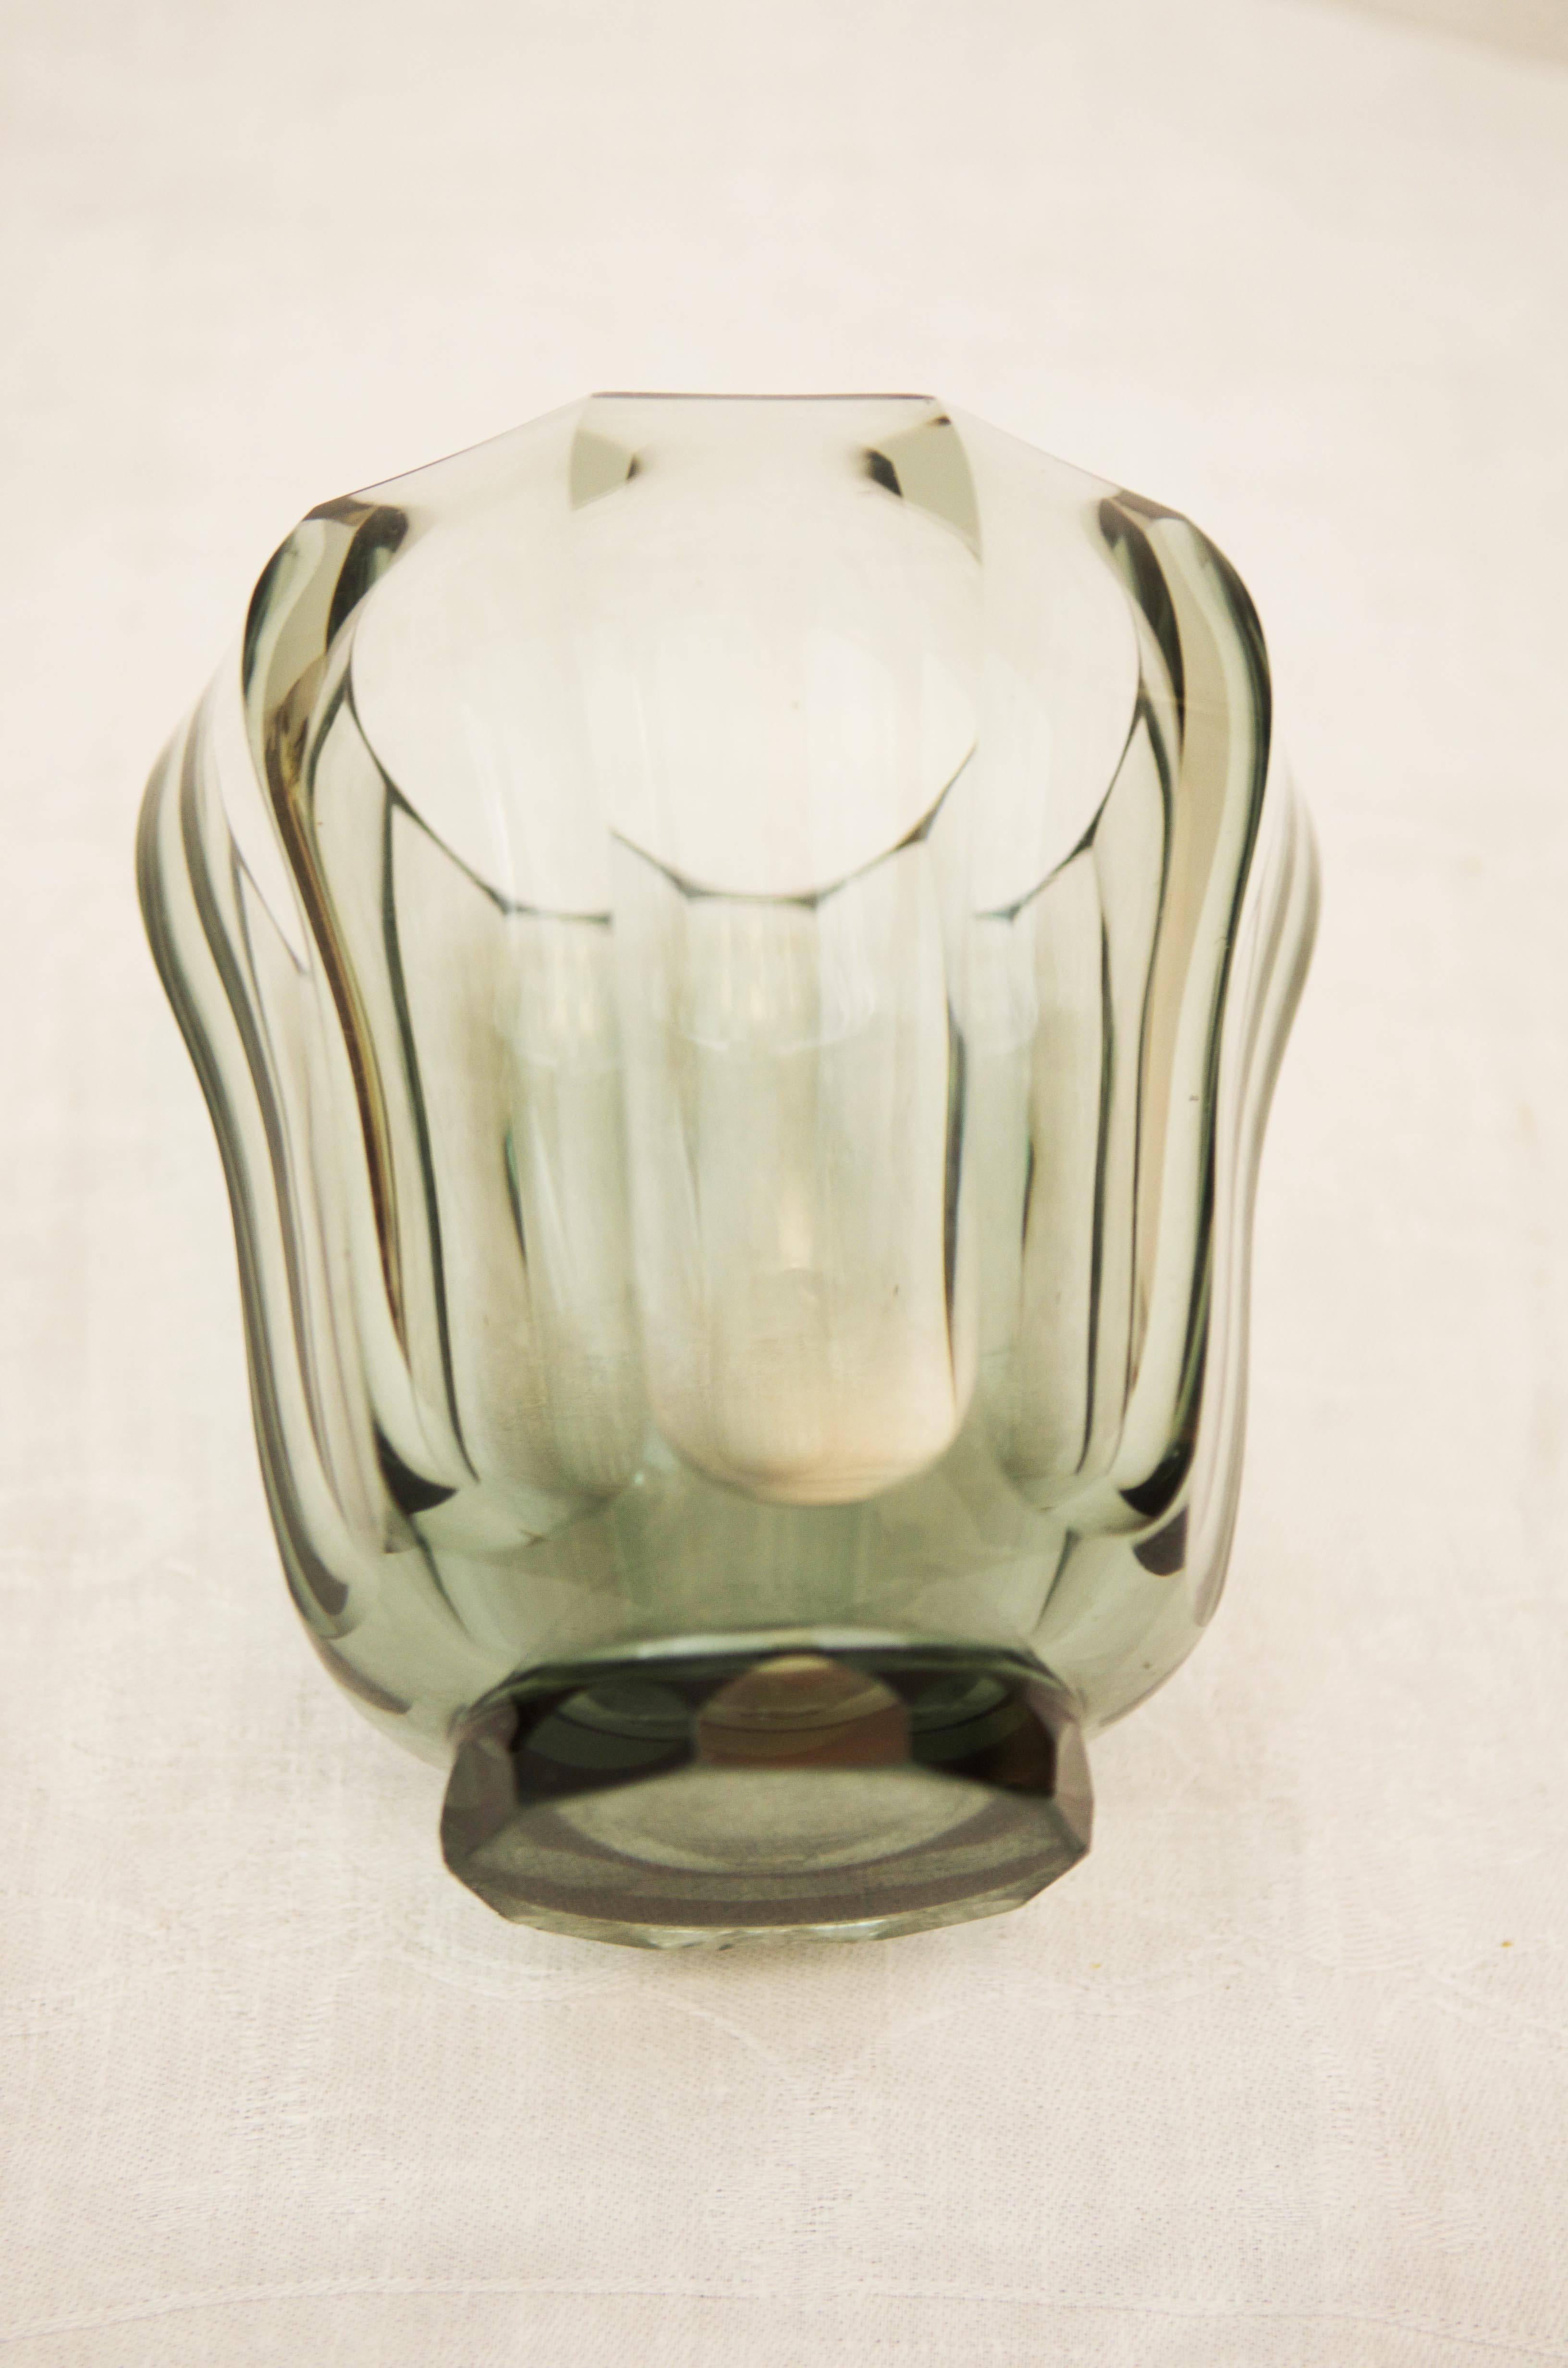 Vase aus böhmischem Kristallglas im Art-Deco-Stil.
Schöner Zustand, aber ein kleiner Chip auf der Basis